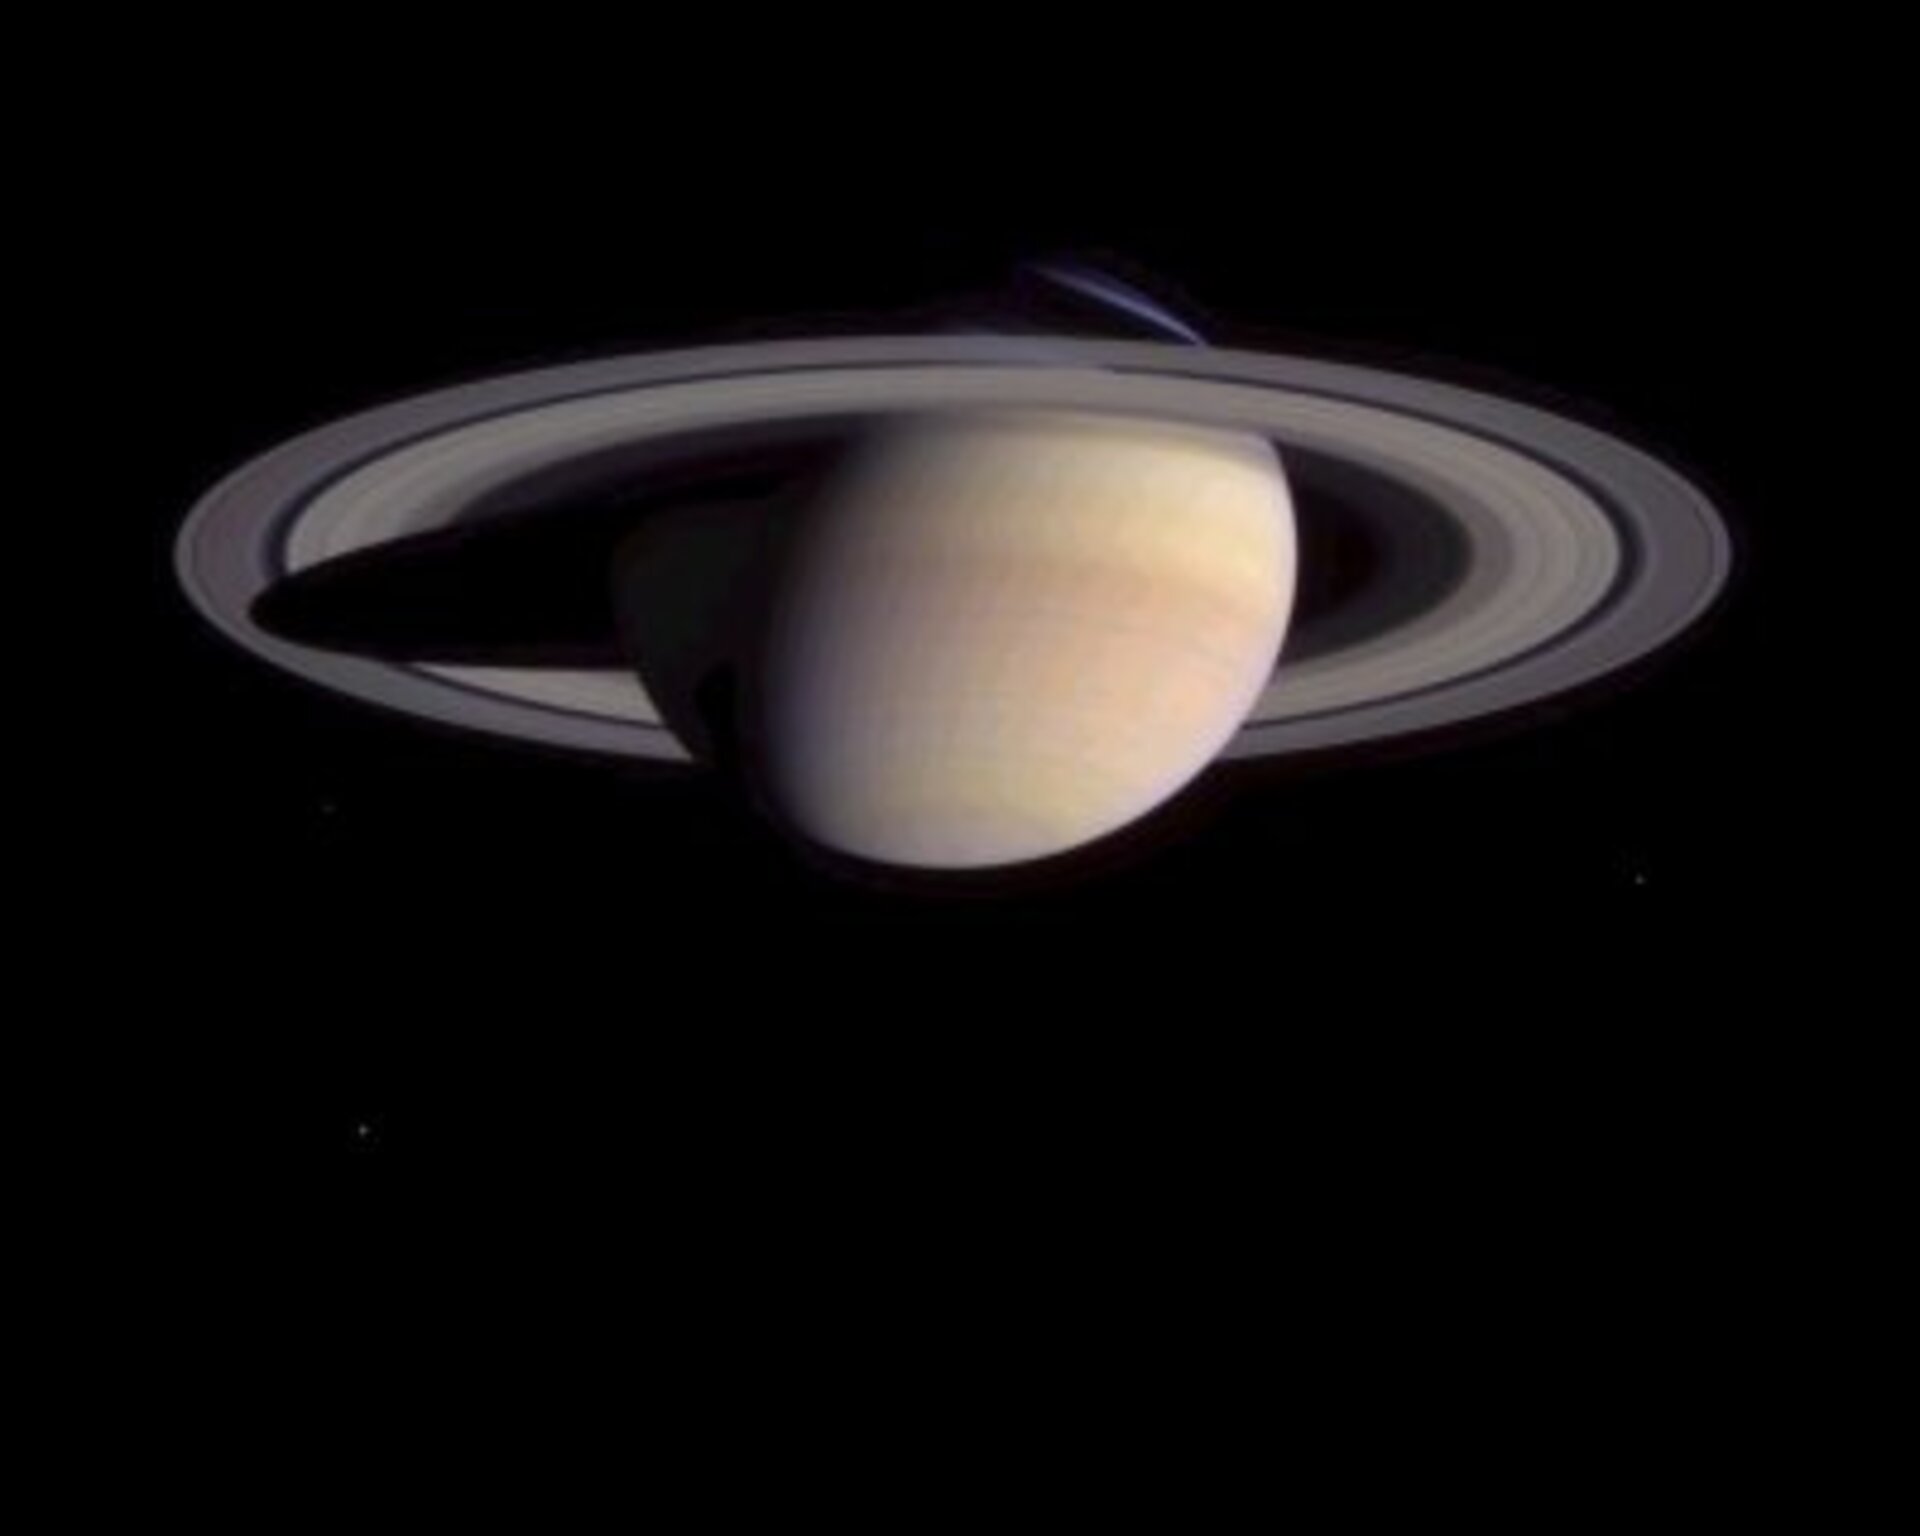 Saturno visto da Cassini - 2 Aprile 2004